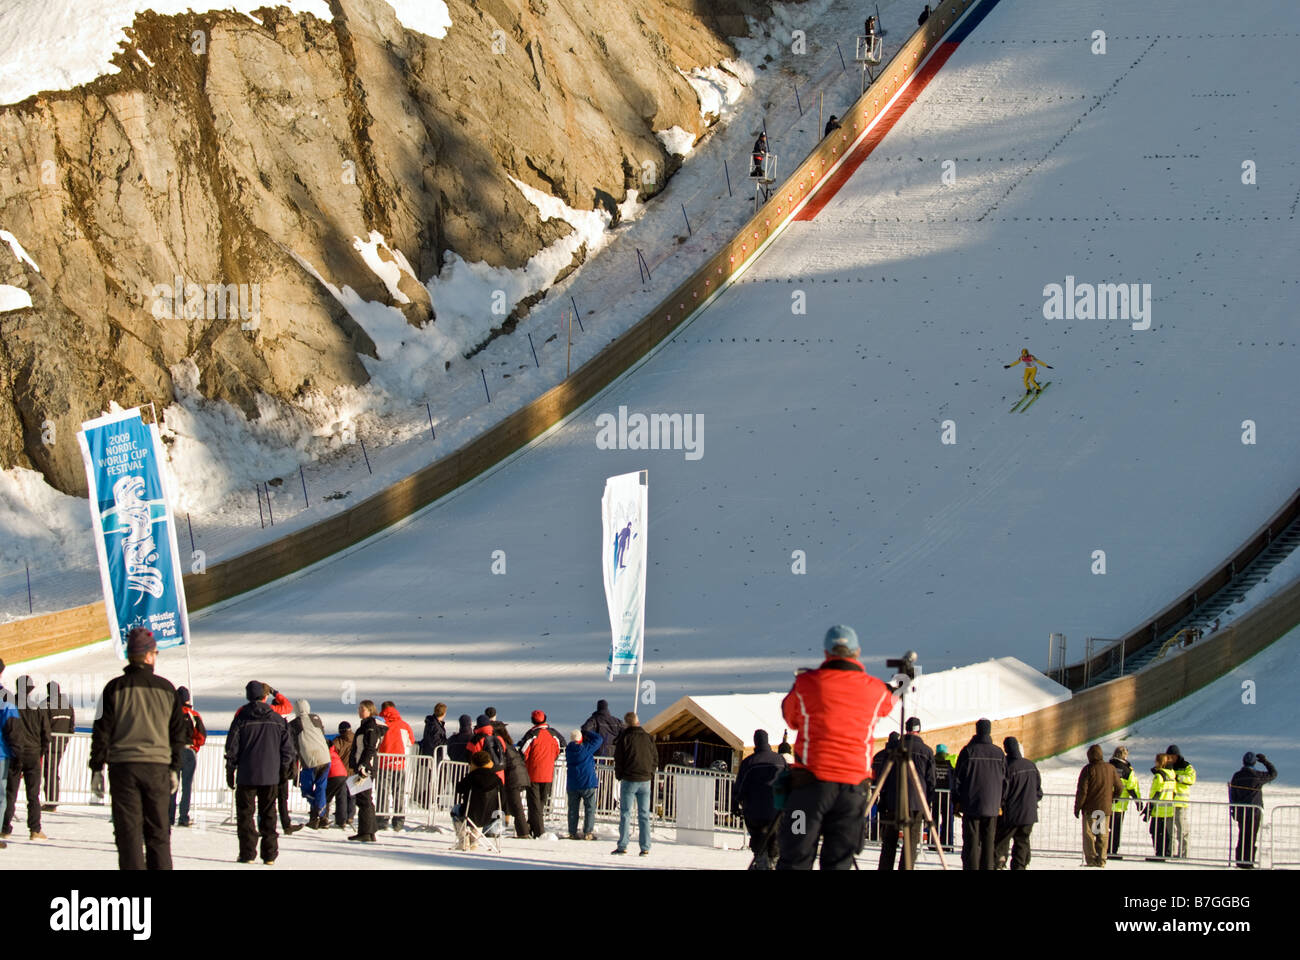 Puente de esquí Roman Koudelka de la República Checa termina su práctica saltar en las instalaciones de salto de esquí de Whistler-Blackcomb. Foto de stock